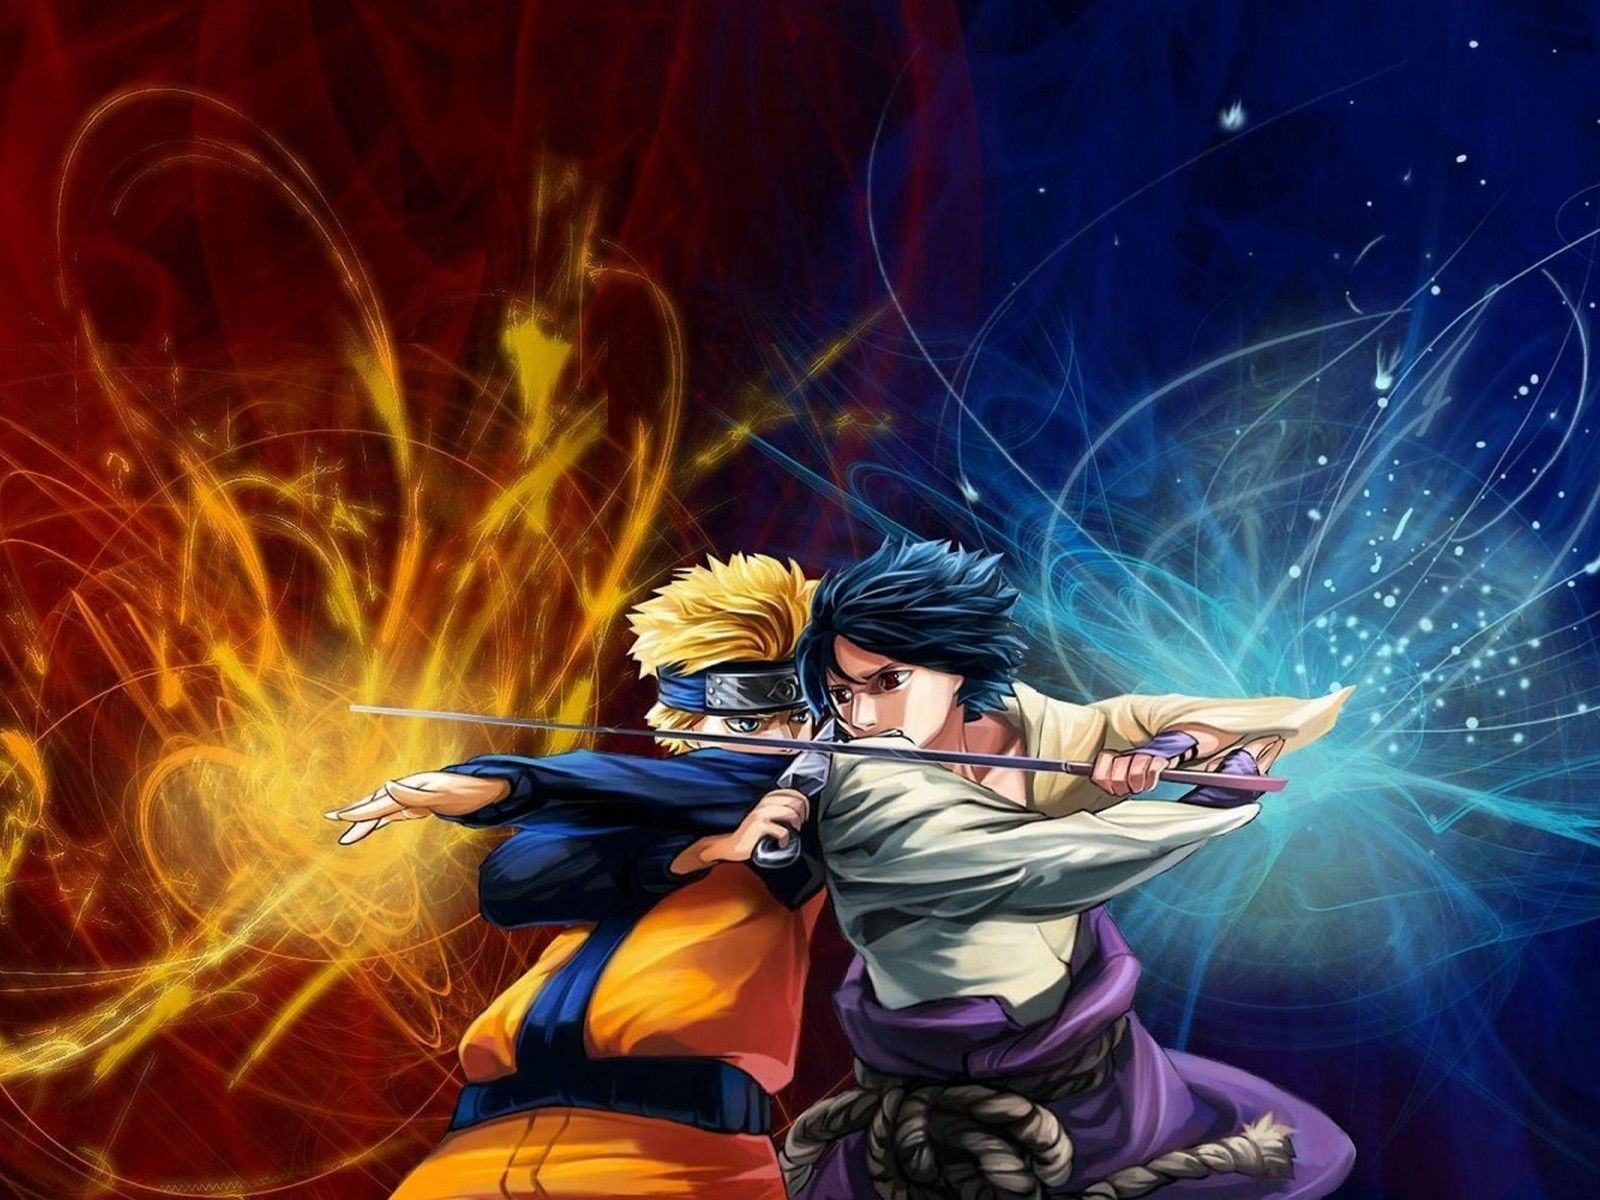 La morada de la peña otaku marteña: Wallpapers Anime HD - Naruto ...